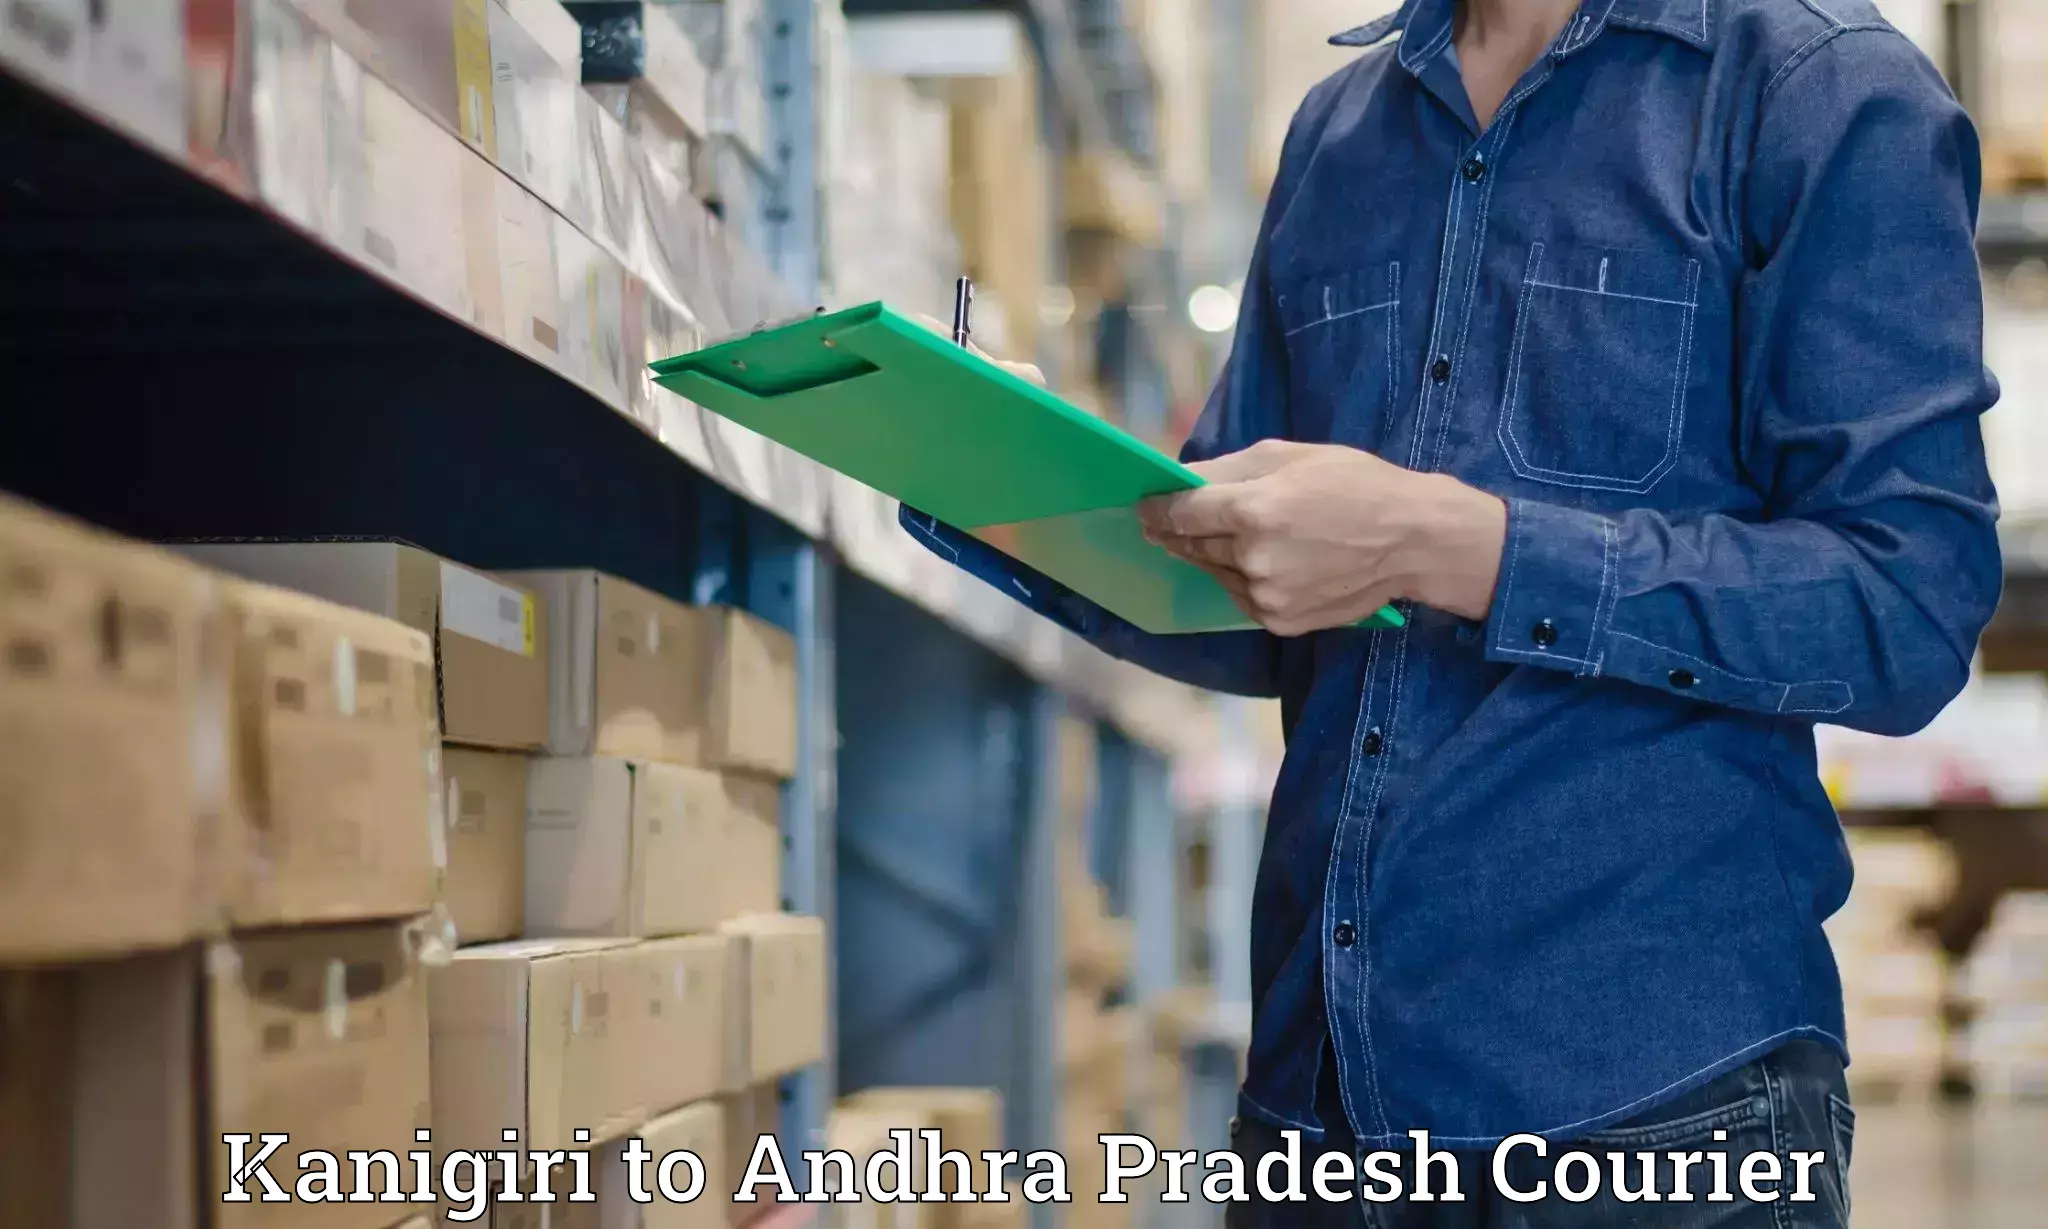 On-call courier service Kanigiri to Andhra Pradesh